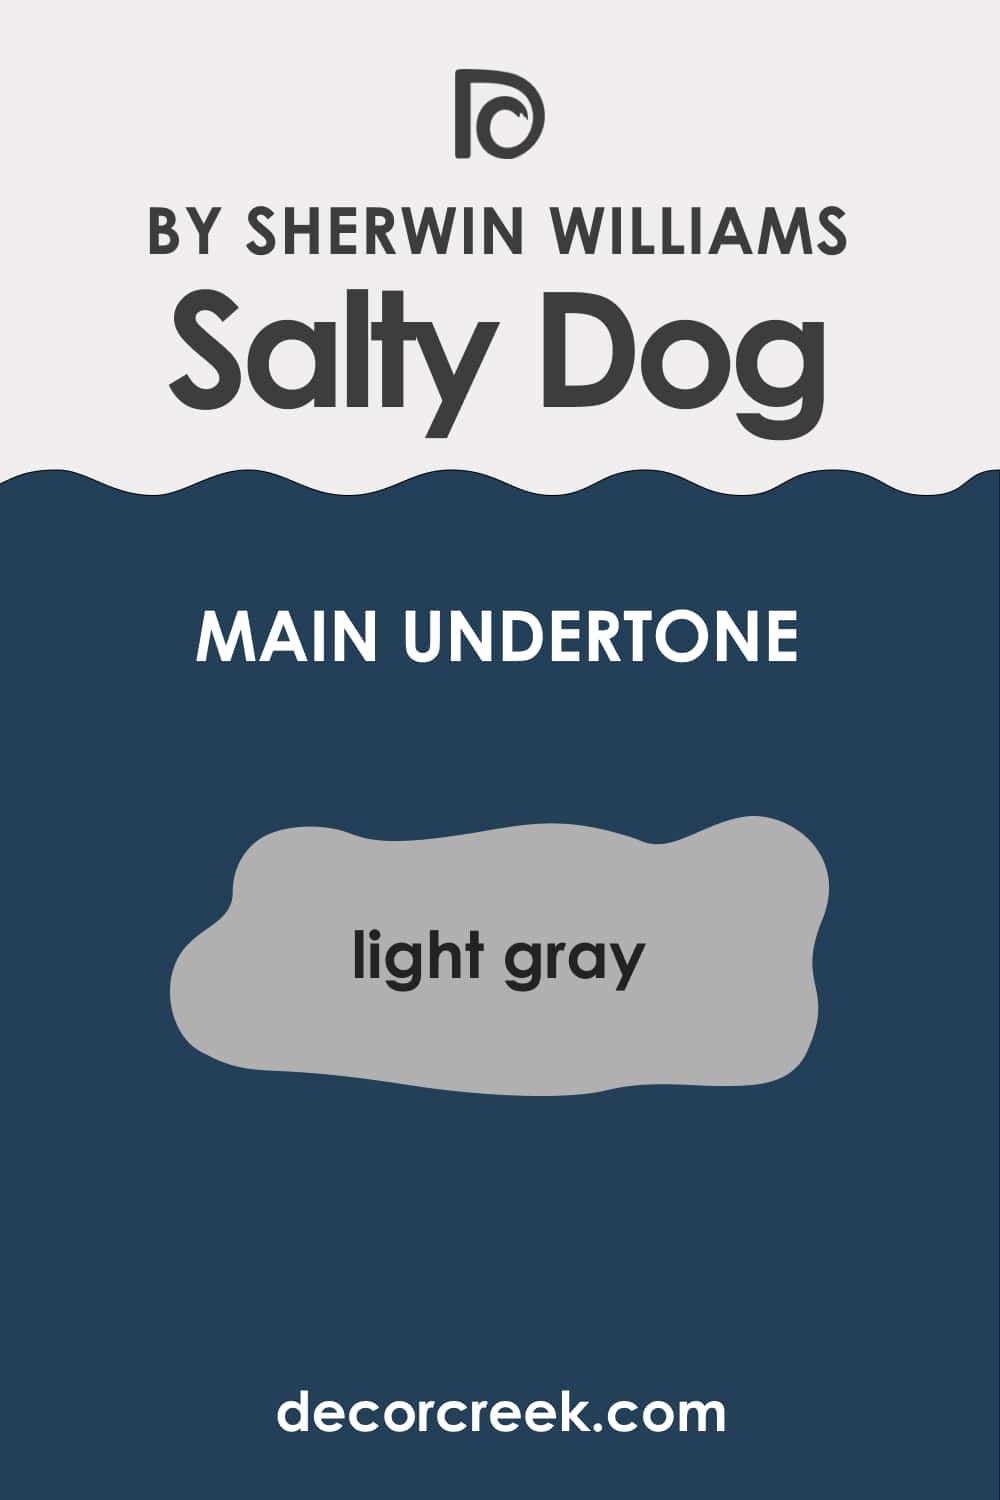 What Undertones Salty Dog SW-9177 Has?